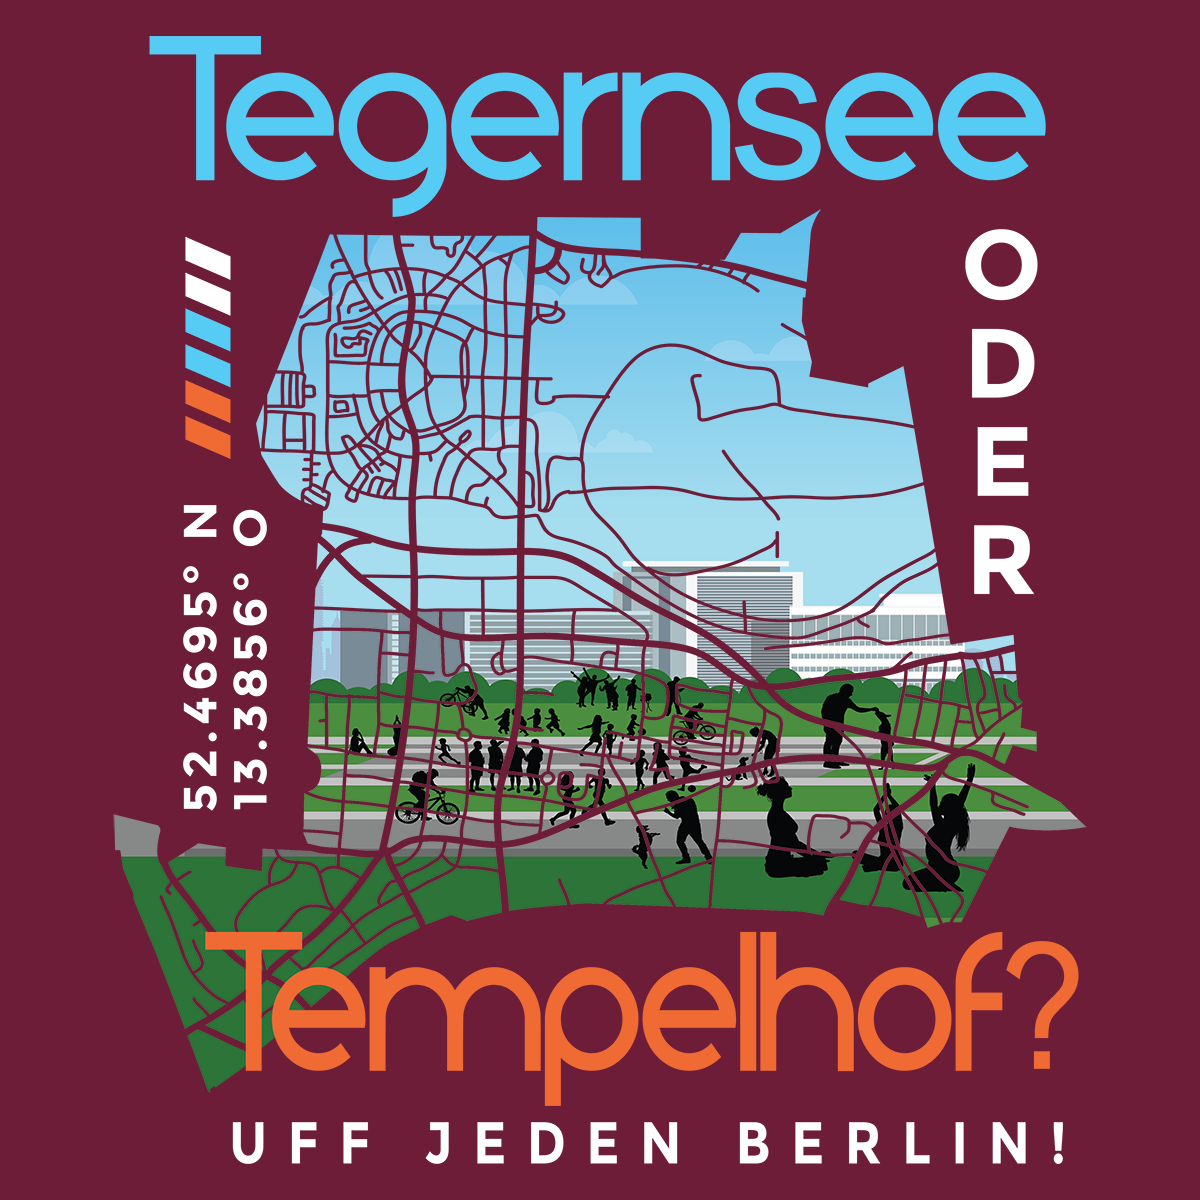 Tegernsee oder Tempelhof